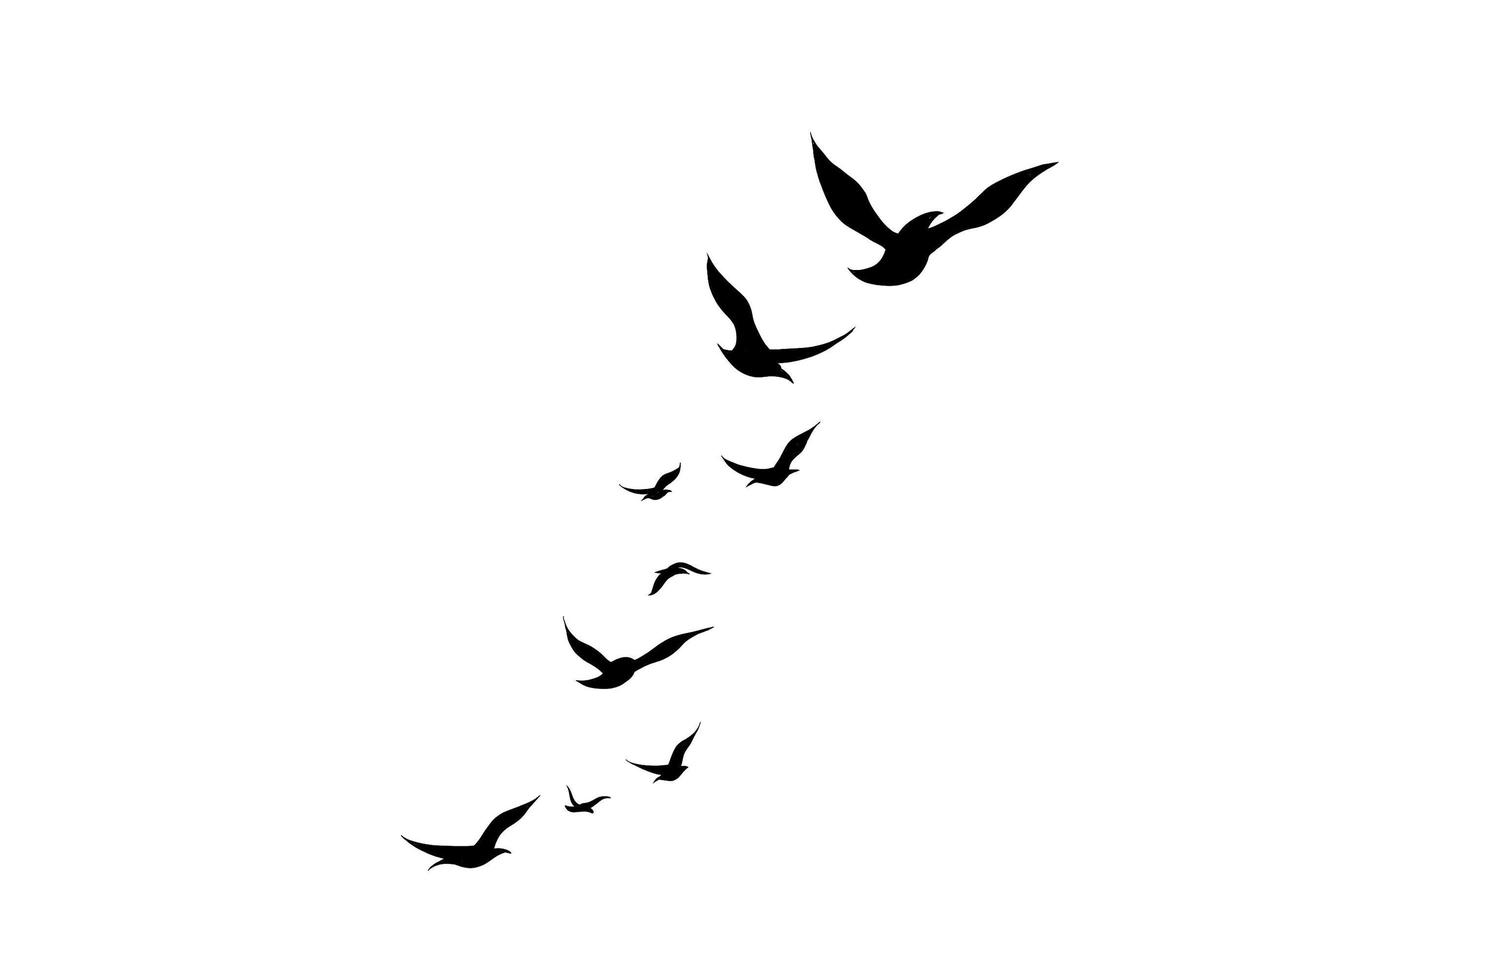 de flygande fåglarna illustrationen isolerad på en vit bakgrund. en flock flygande djur i en enkel design för ett dekorativt element och tatuering. foto